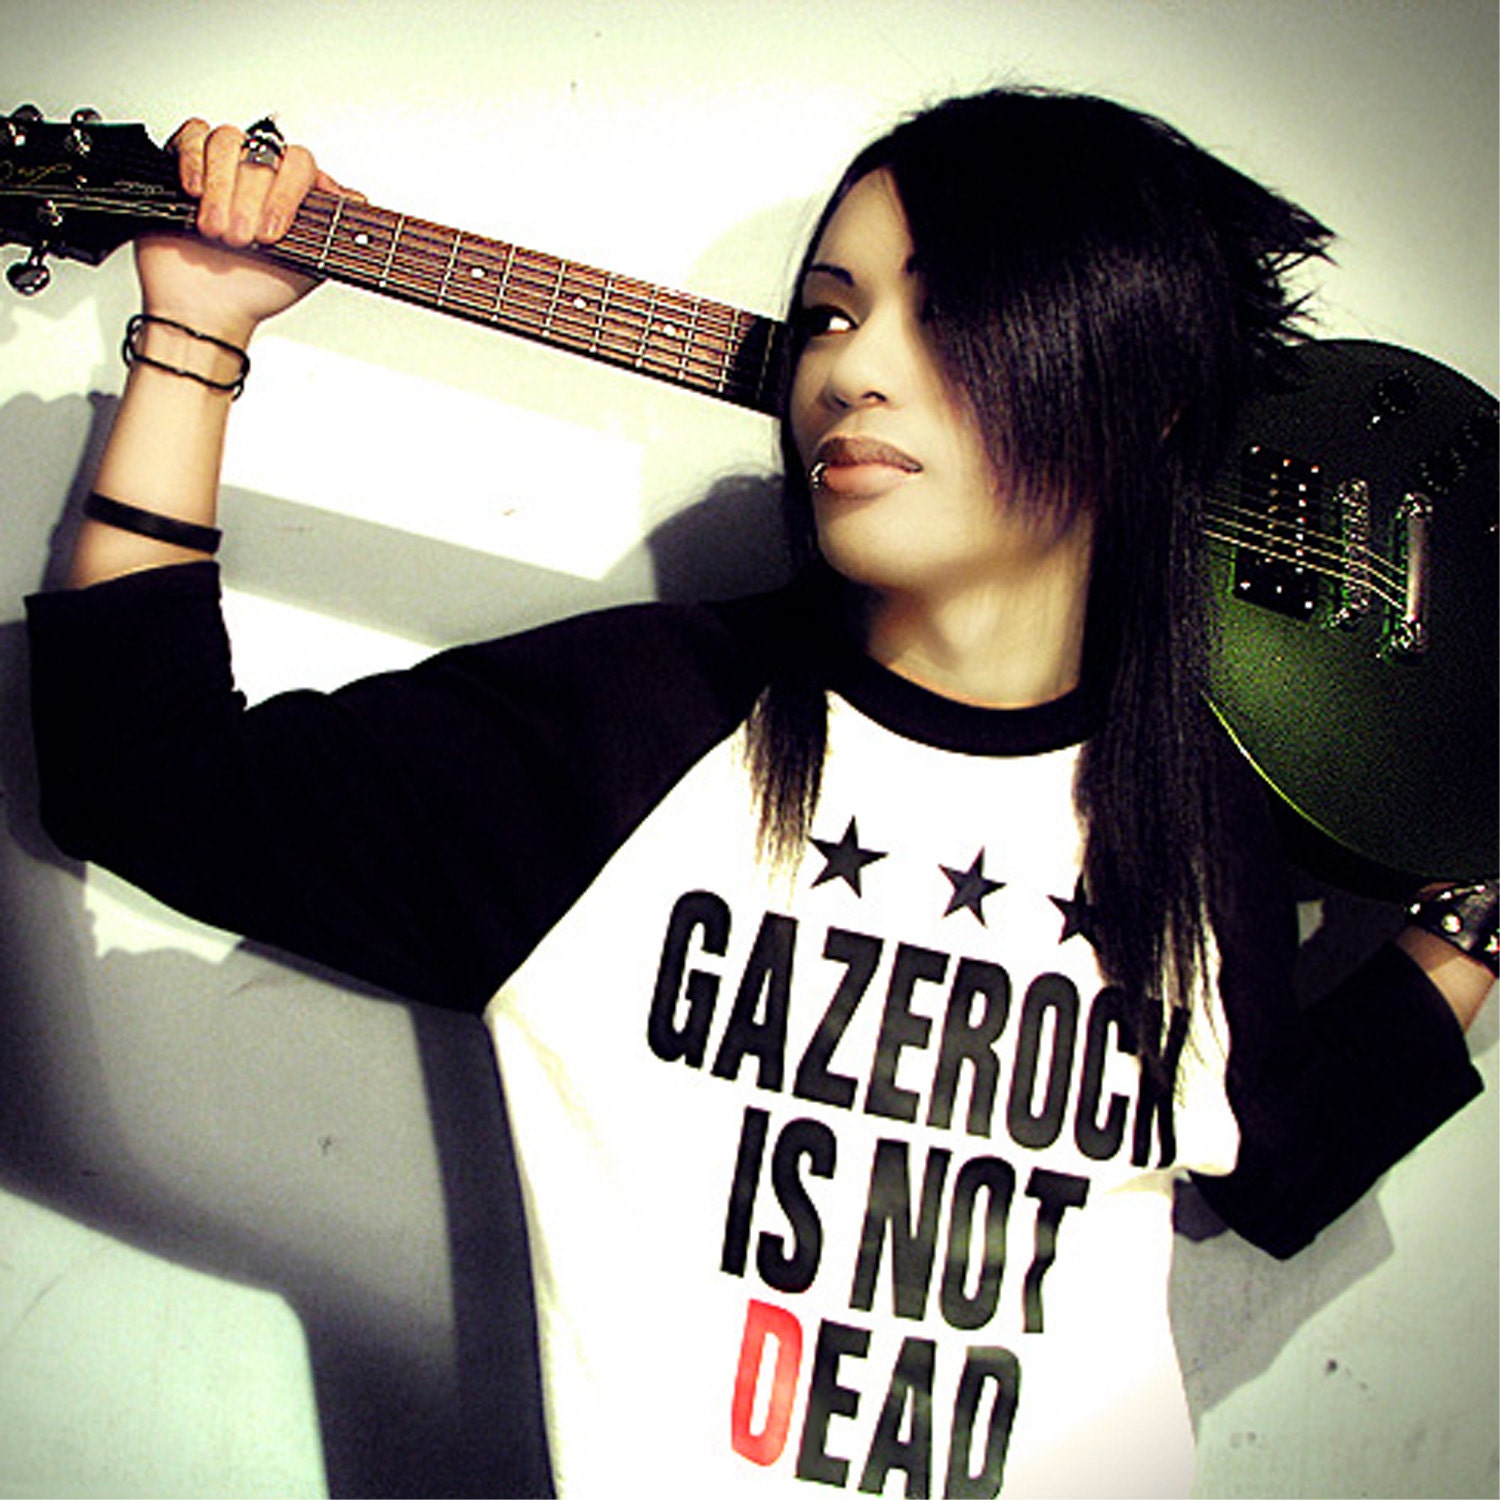 The Gazette. Gazerock is not dead